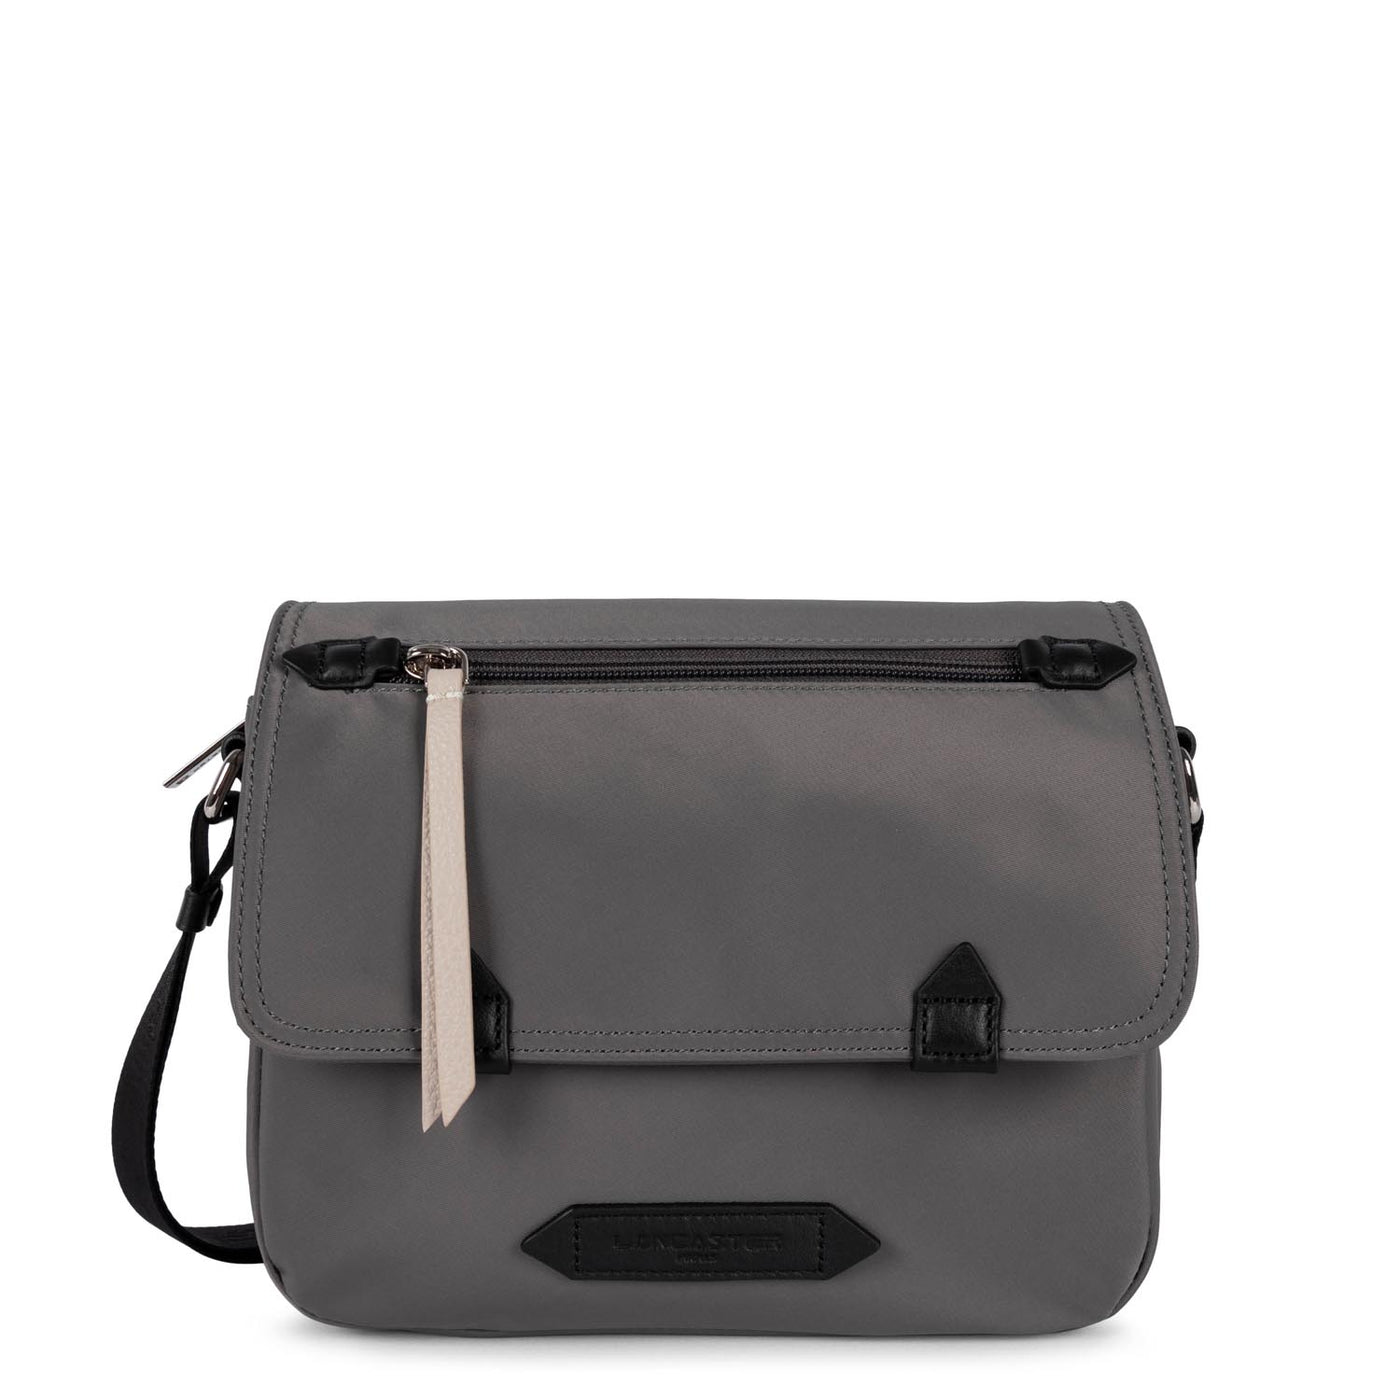 messenger bag - basic sport #couleur_gris-noir